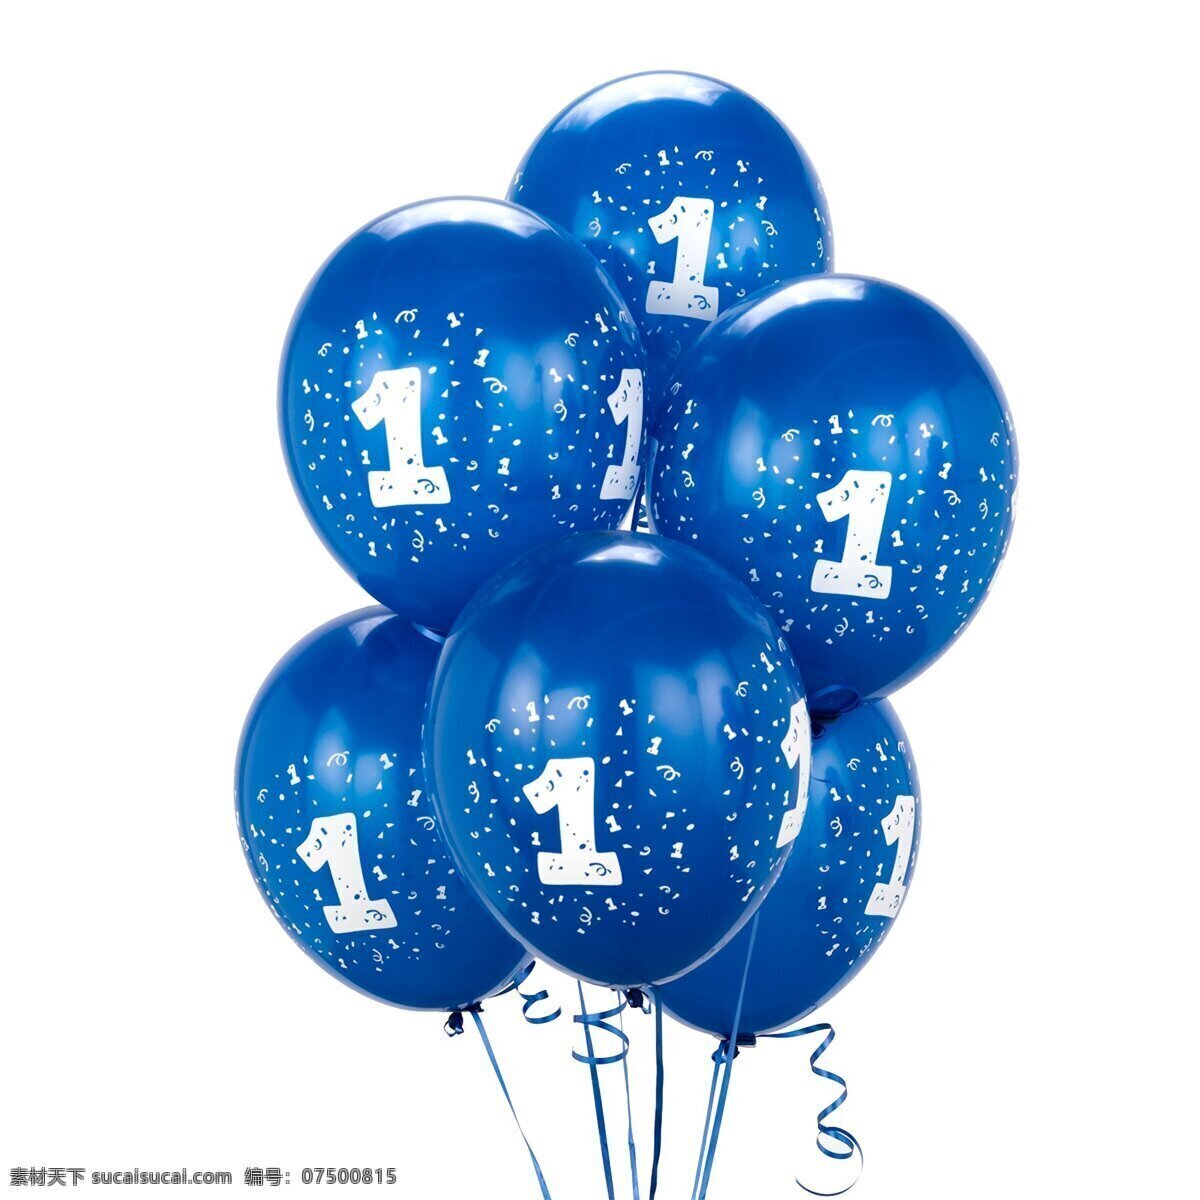 斑点 宝蓝色 彩色 彩色气球 儿童 粉红 花纹 欢乐 气球 数字 字母 蓝色 生日 节日 喜庆 可爱 泡泡 生活百科 矢量图 艺术字